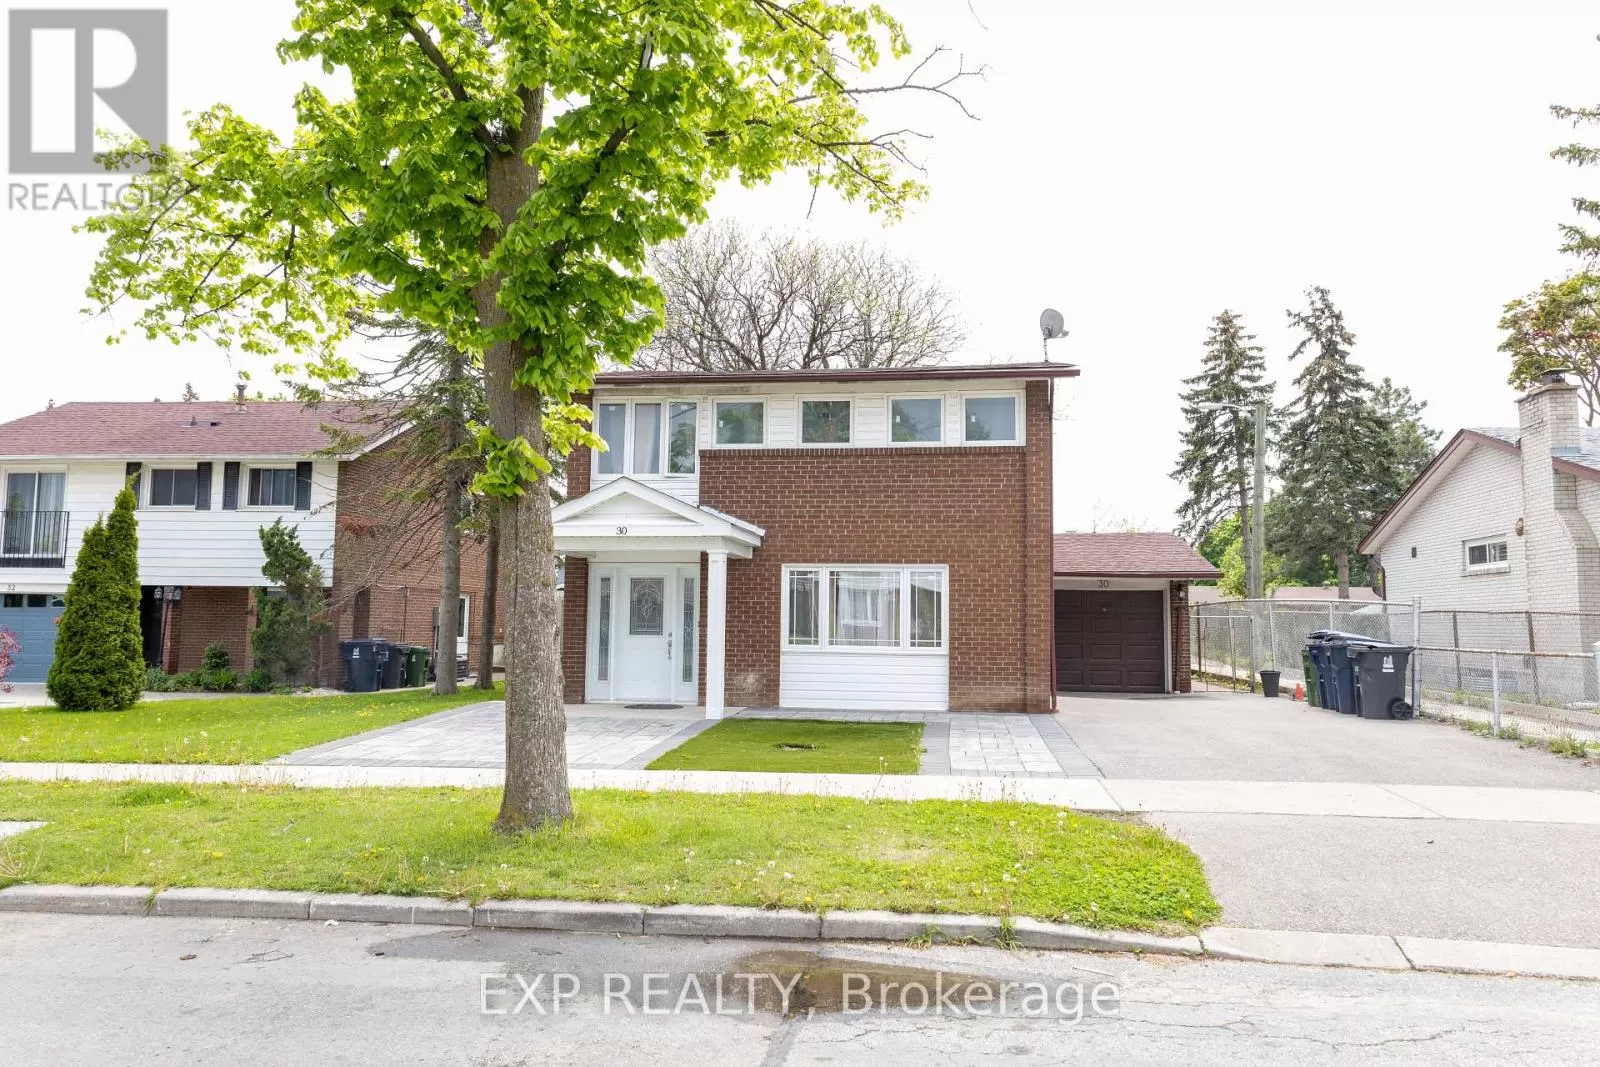 House for rent: 30 Davistow Crescent, Toronto, Ontario M9V 3E9